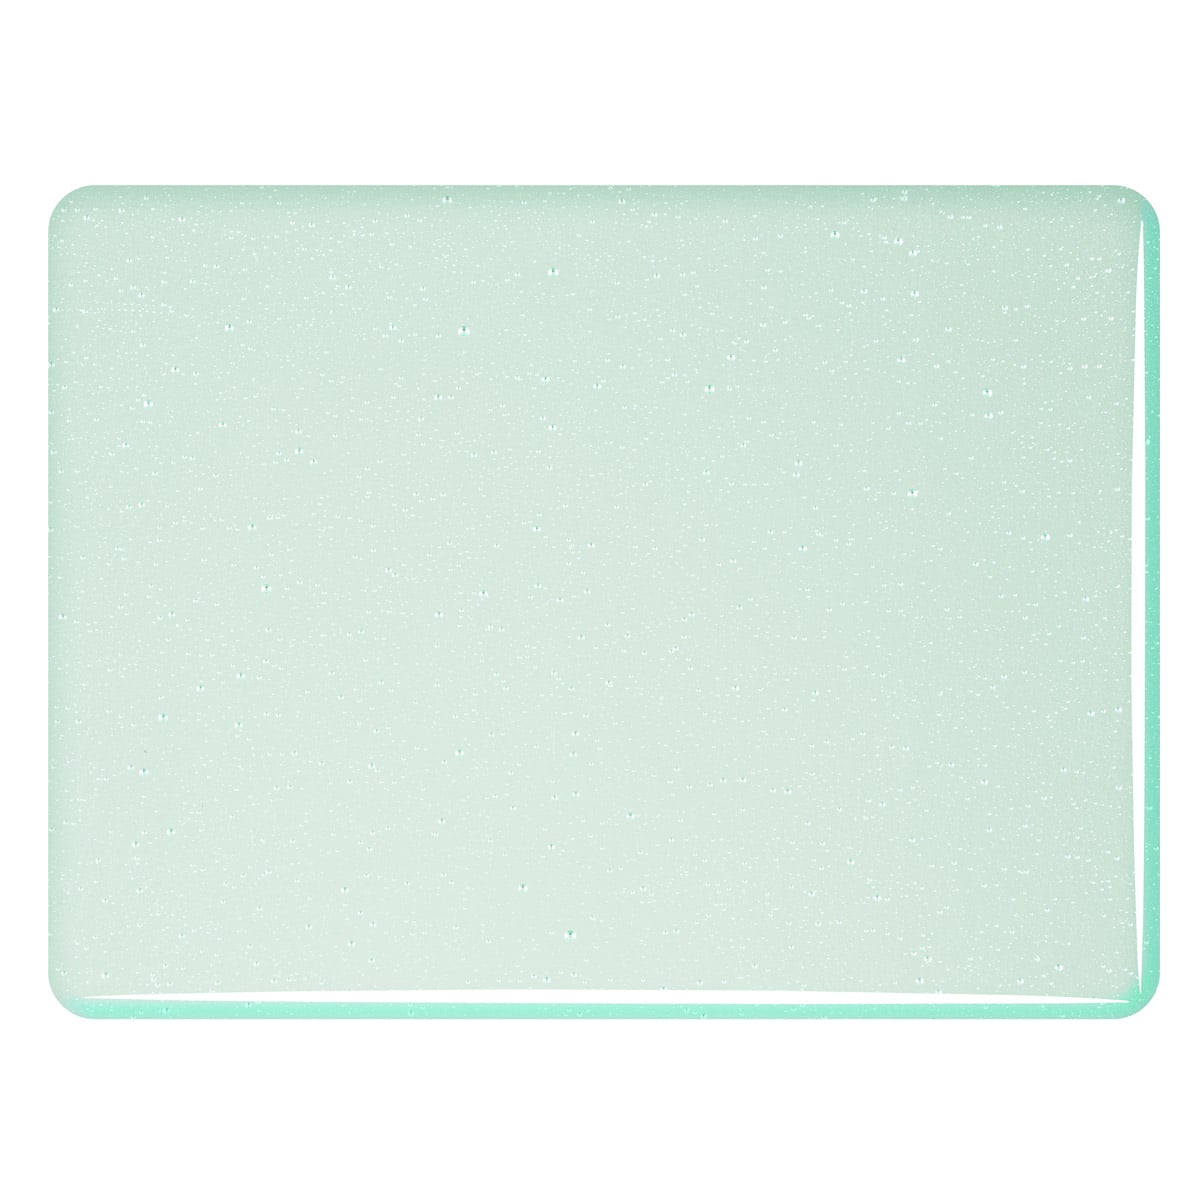 001845 Ming Green Tint sheet glass swatch